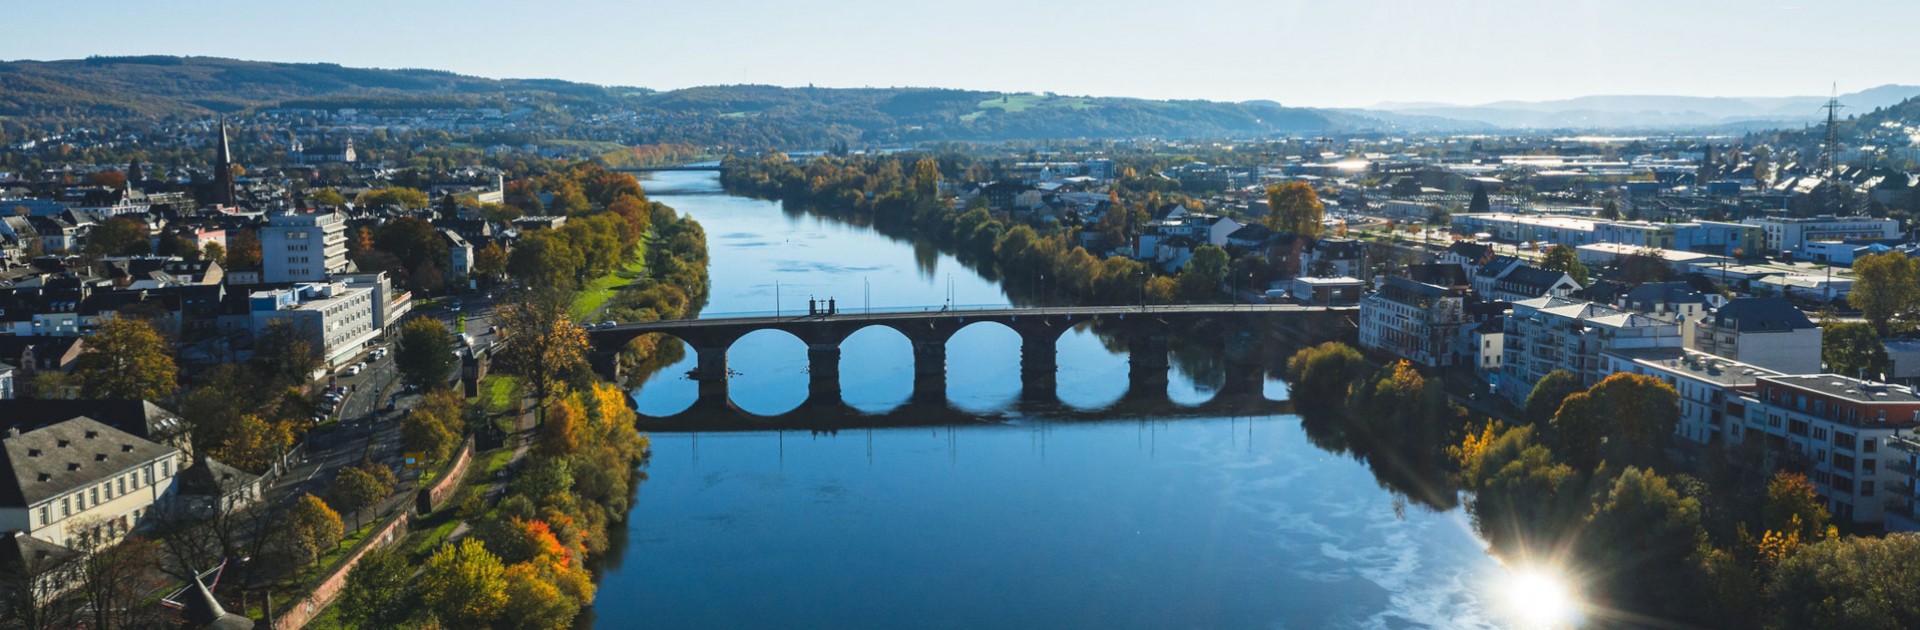 Luftbild von Trier mit der Mosel und der Römerbrücke im Fokus - © Trier Tourismus und Marketing / Victor Beusch